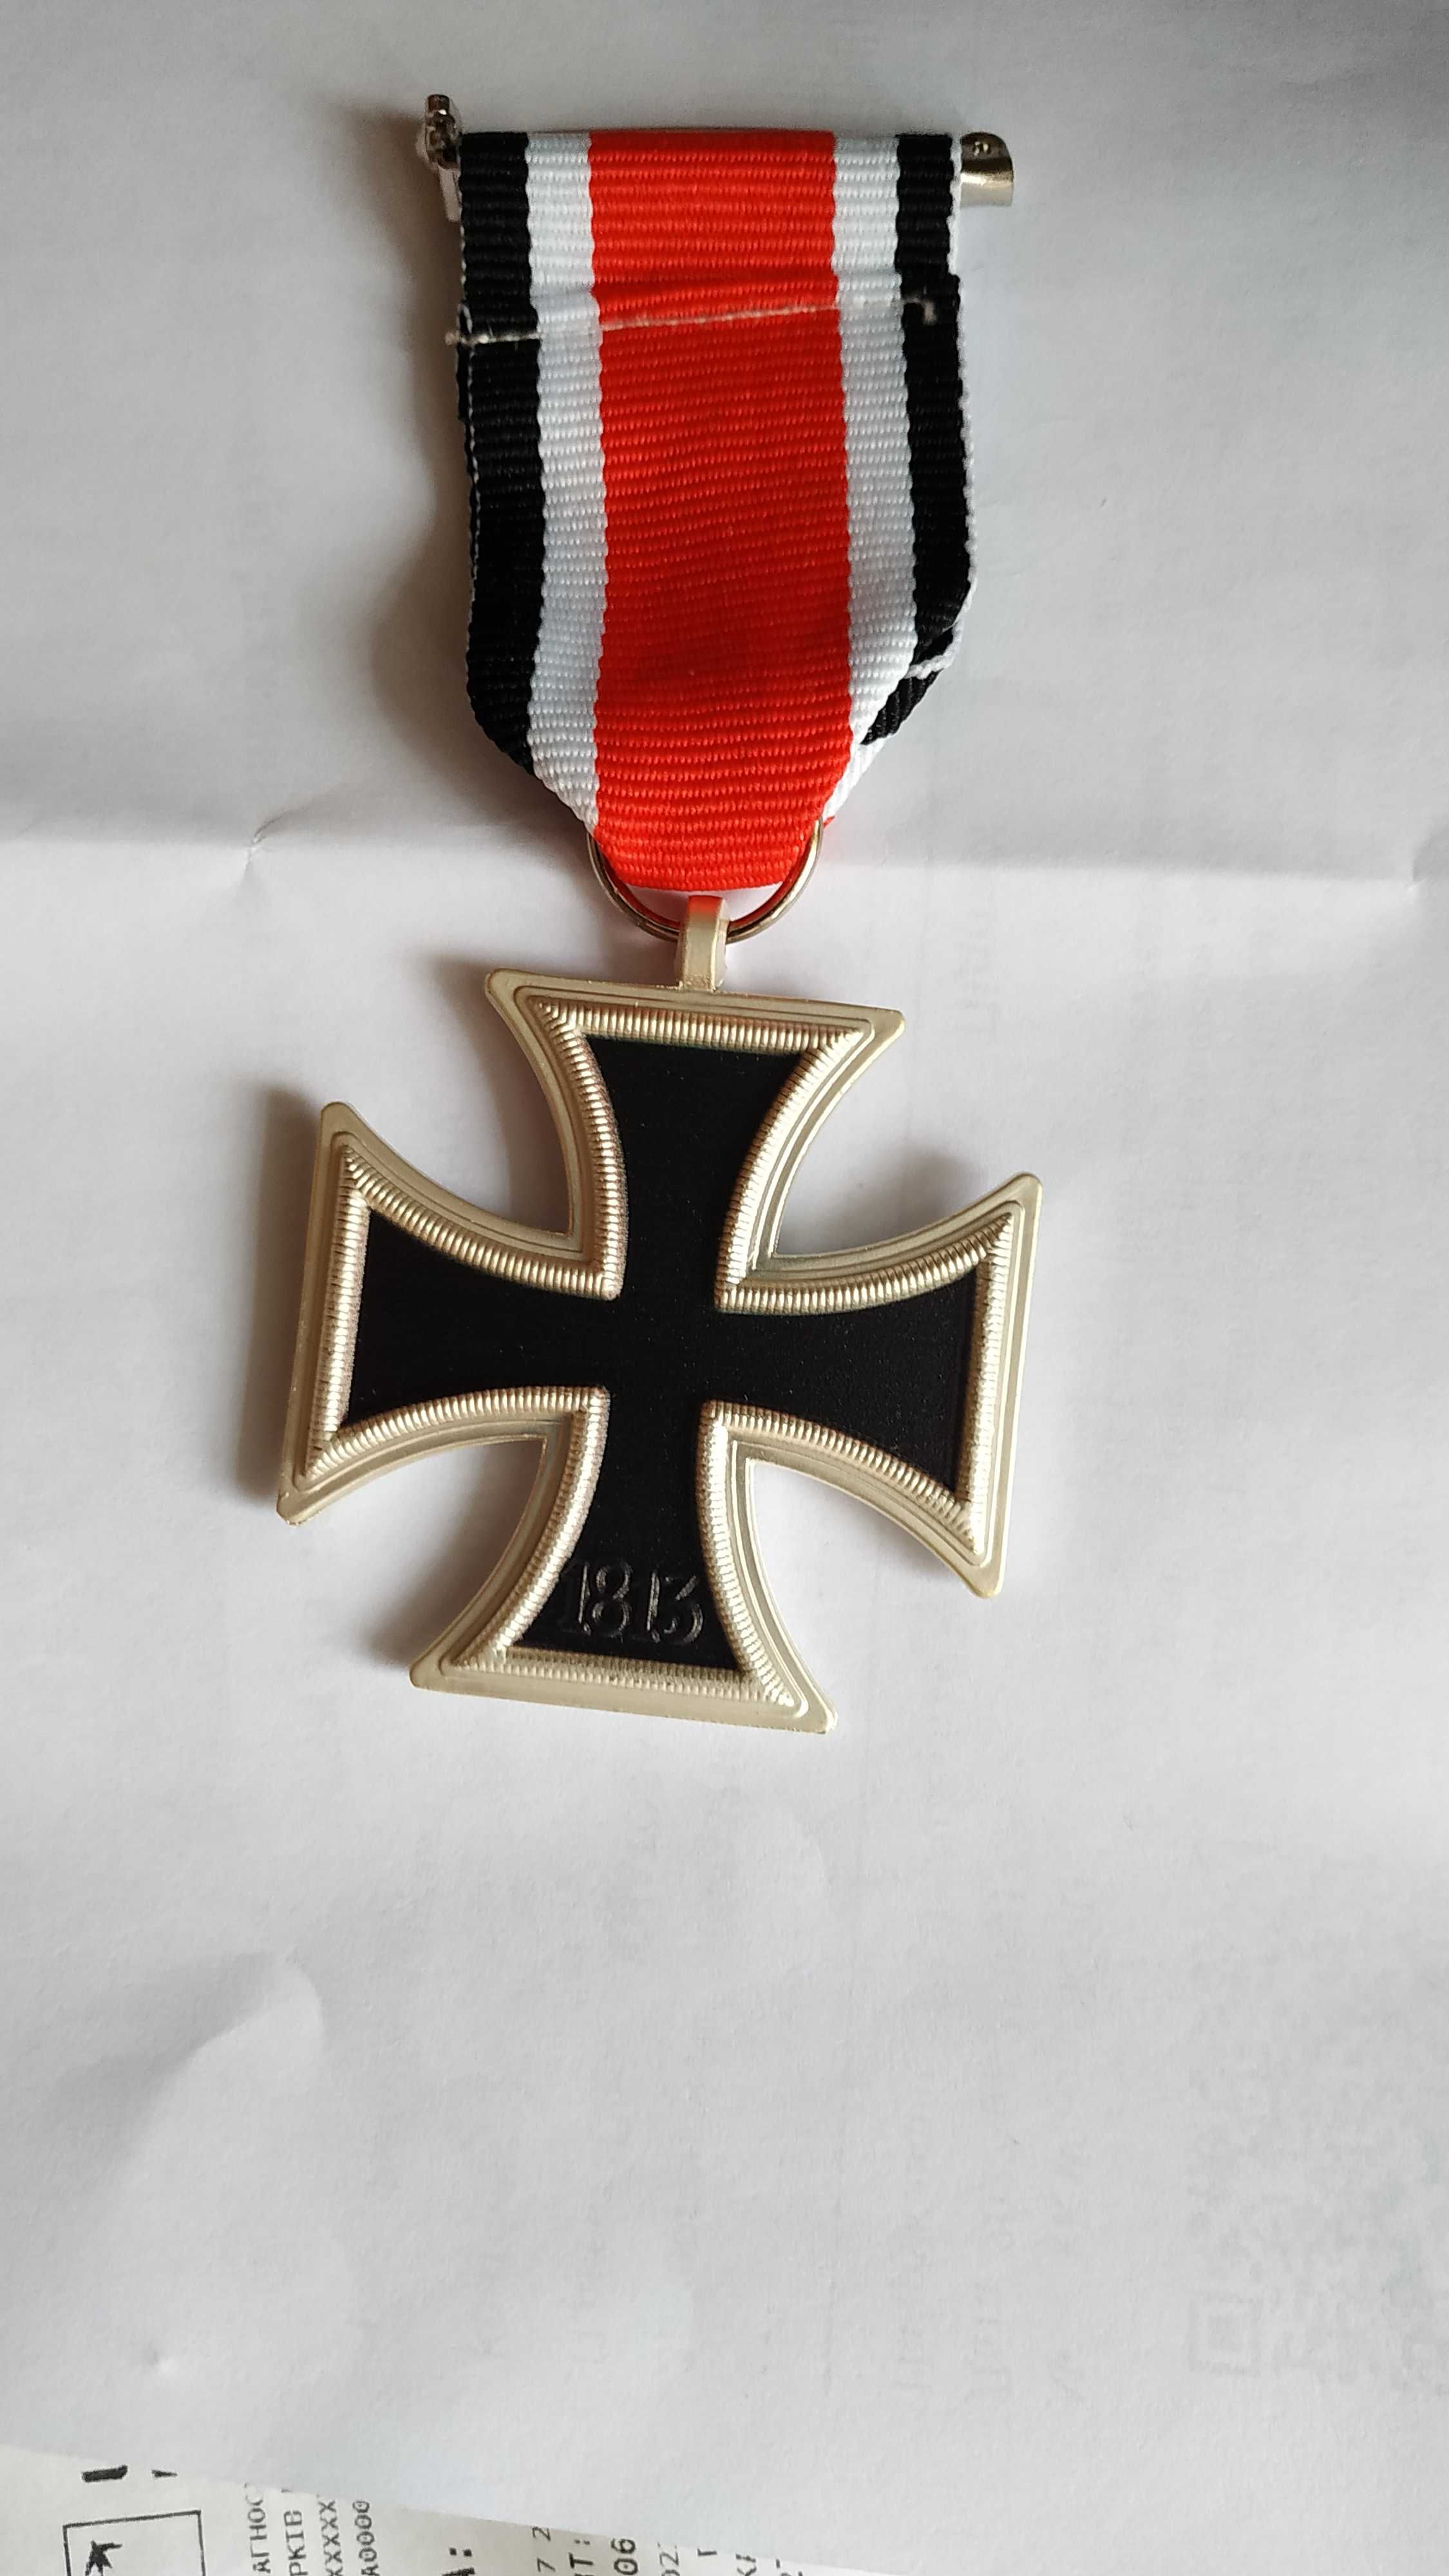 Немецкий крест второй мировой